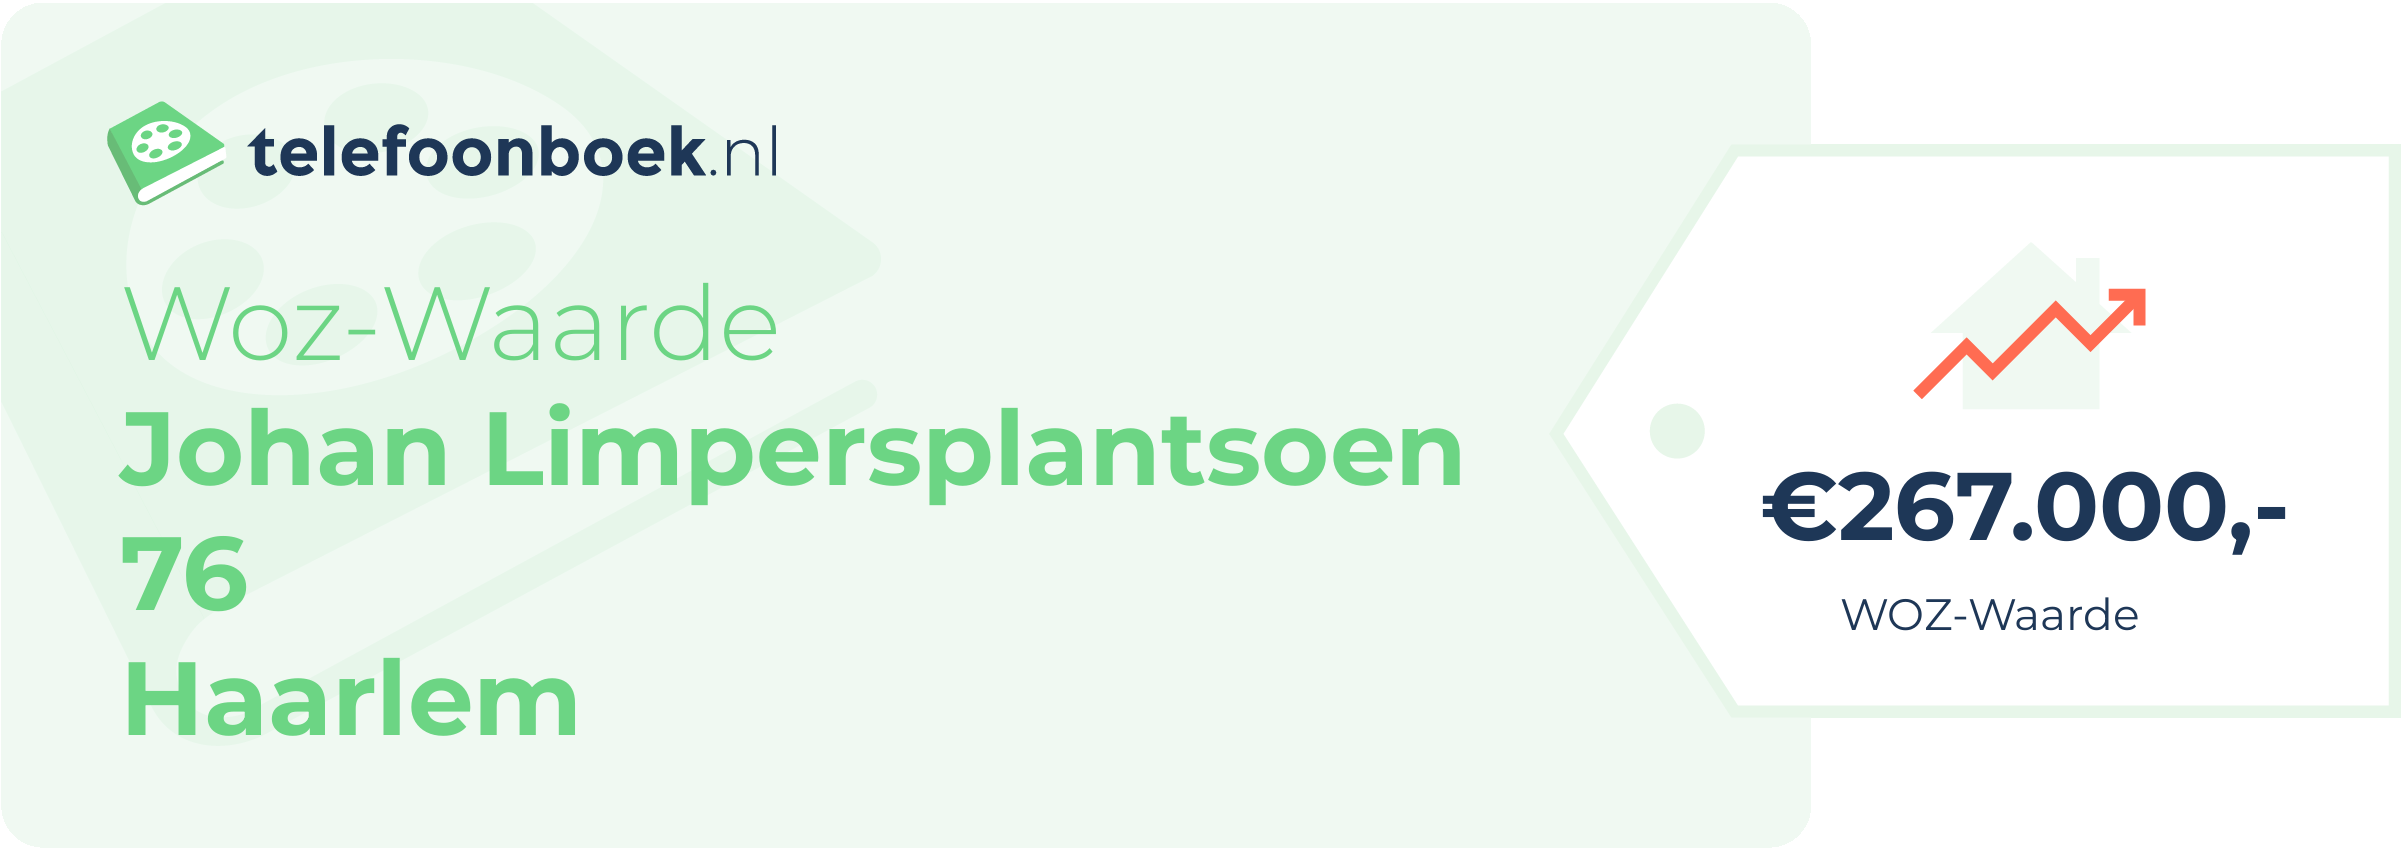 WOZ-waarde Johan Limpersplantsoen 76 Haarlem